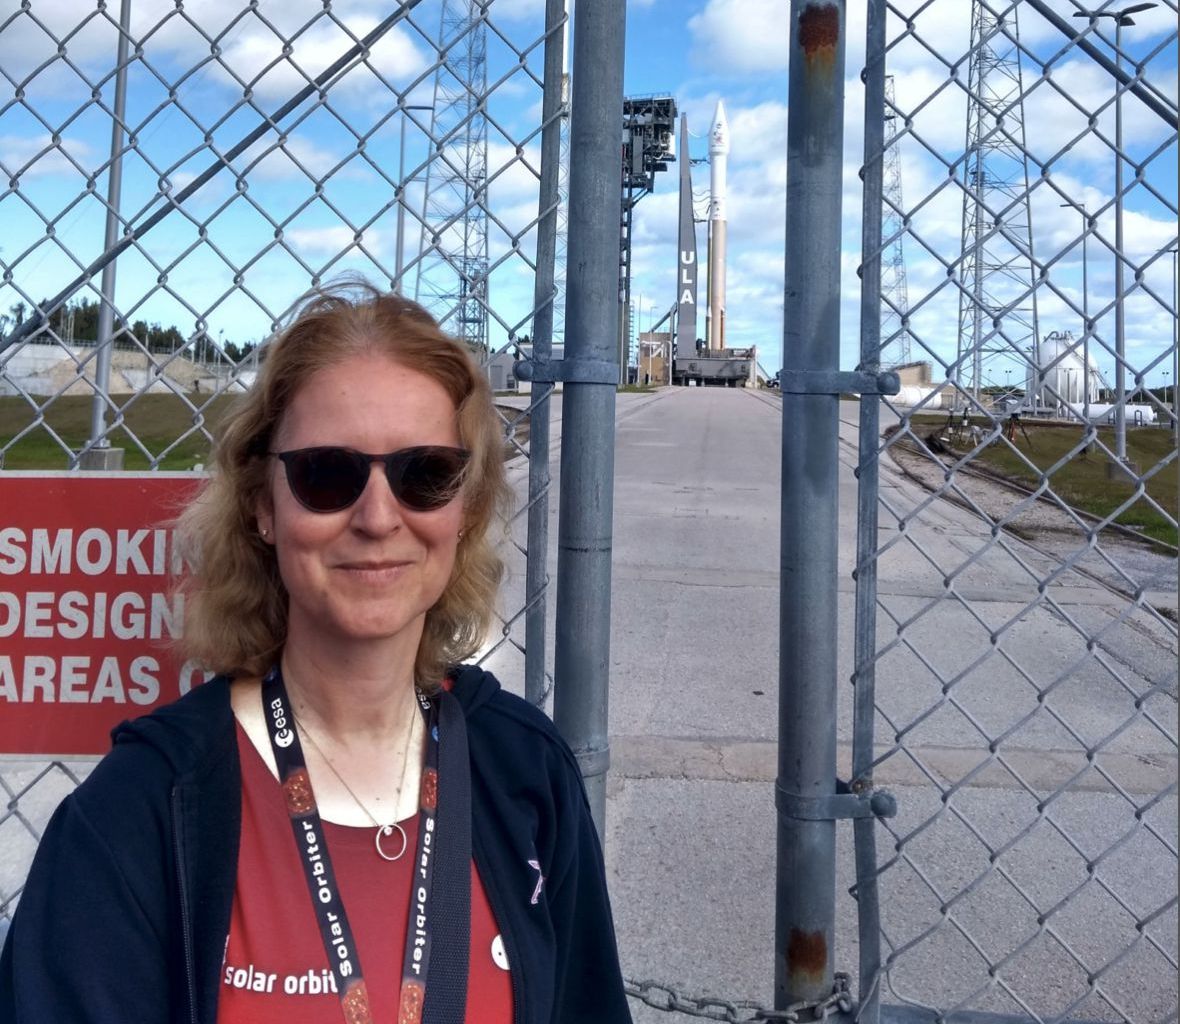 Prof. Louise Harra en février 2020 à Cap Canaveral en Floride (USA) lors du lancement de la sonde spatiale Solar Orbiter, avec laquelle les scientifiques étudient les activités à la surface du soleil.